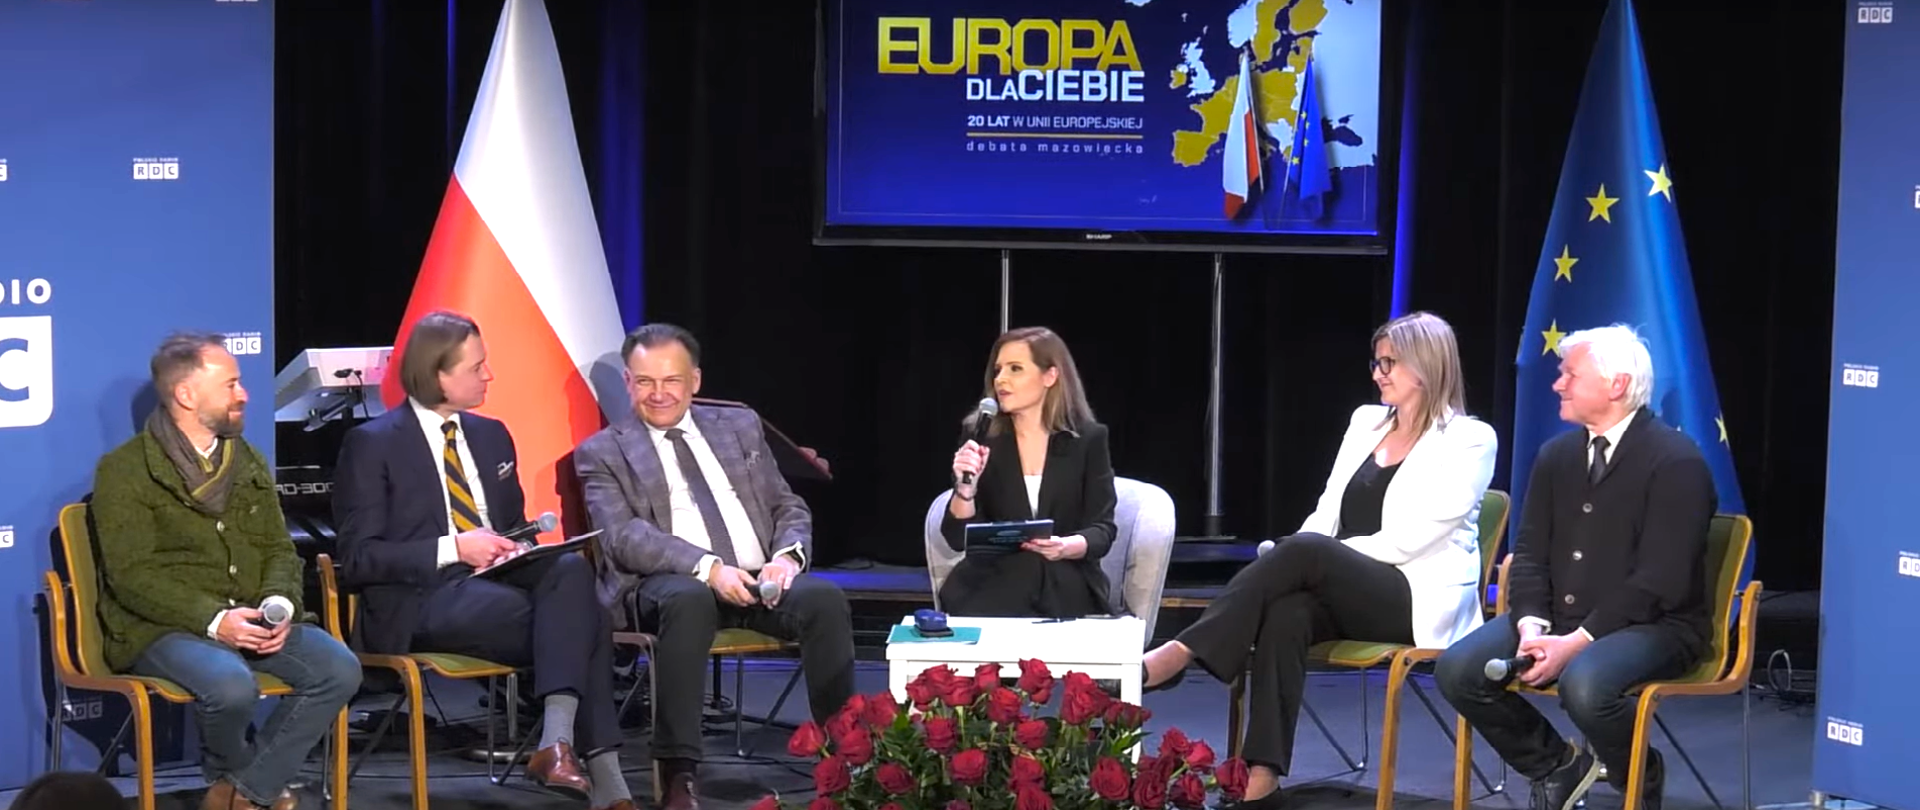 Europa dla Ciebie. 20 lat w Unii Europejskiej – debata z udziałem Wojewody Mazowieckiego
